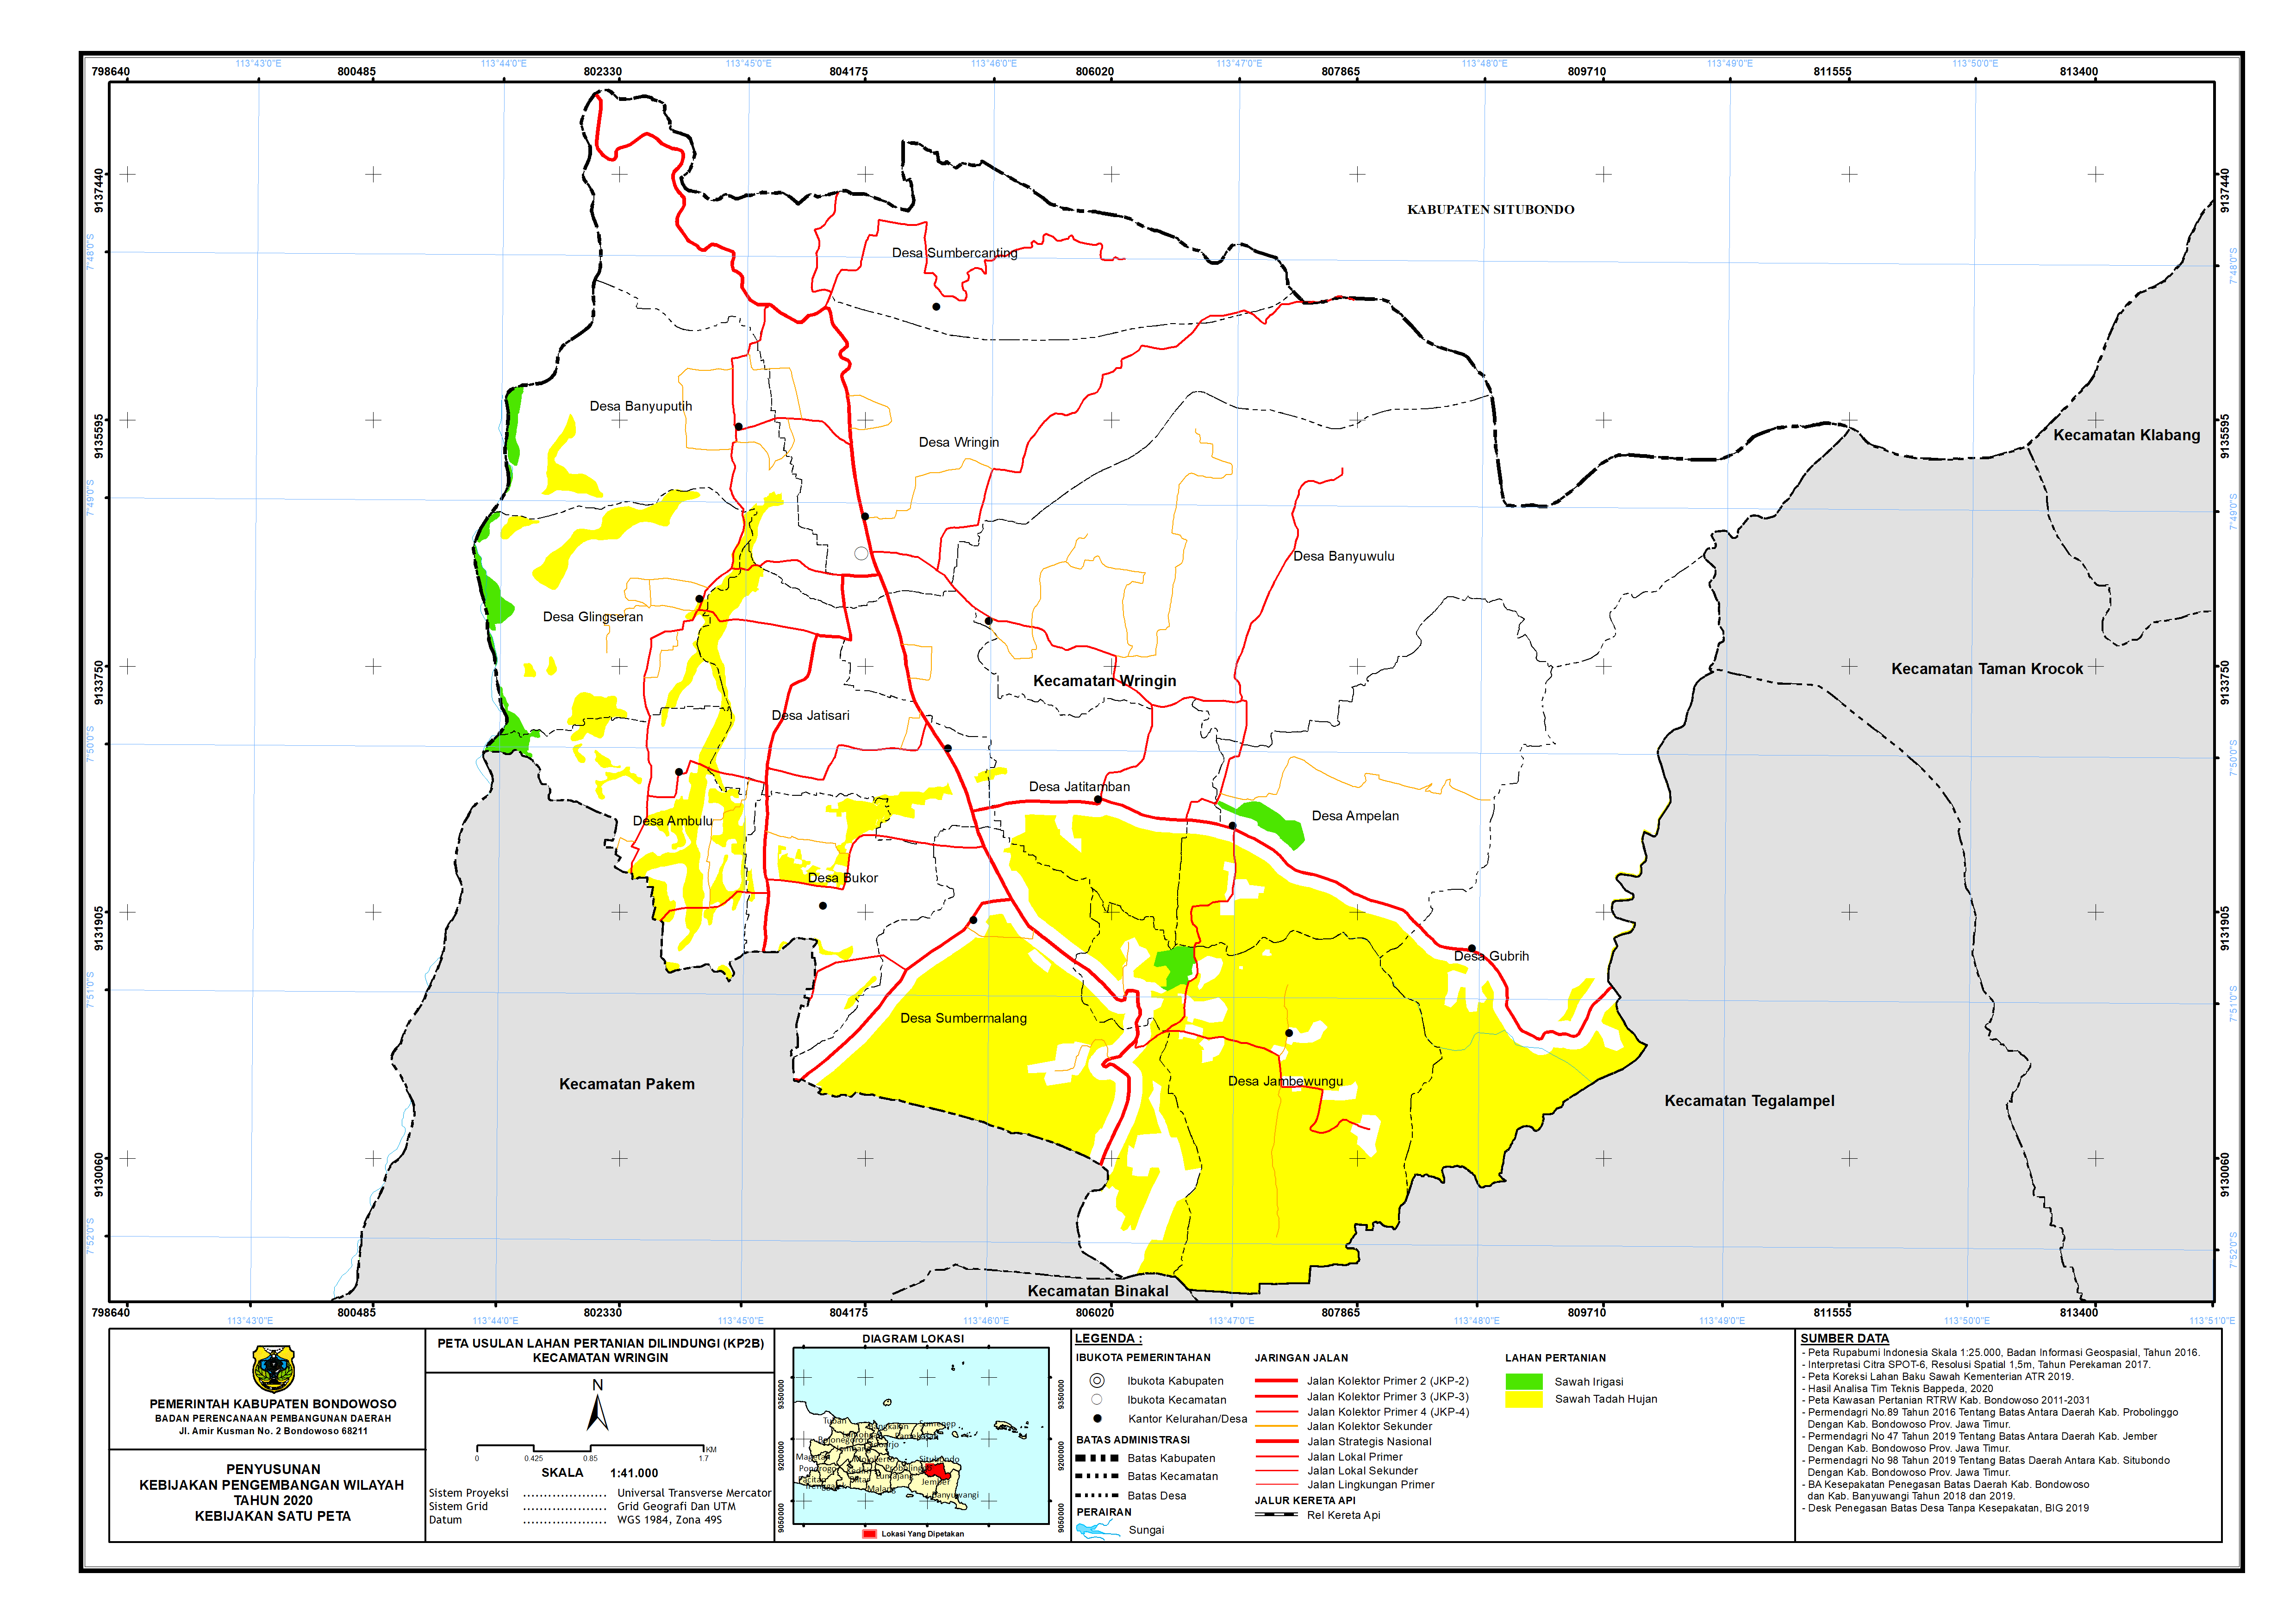 Peta Usulan Lahan Pertanian  Dilindungi Kecamatan Wringin.png